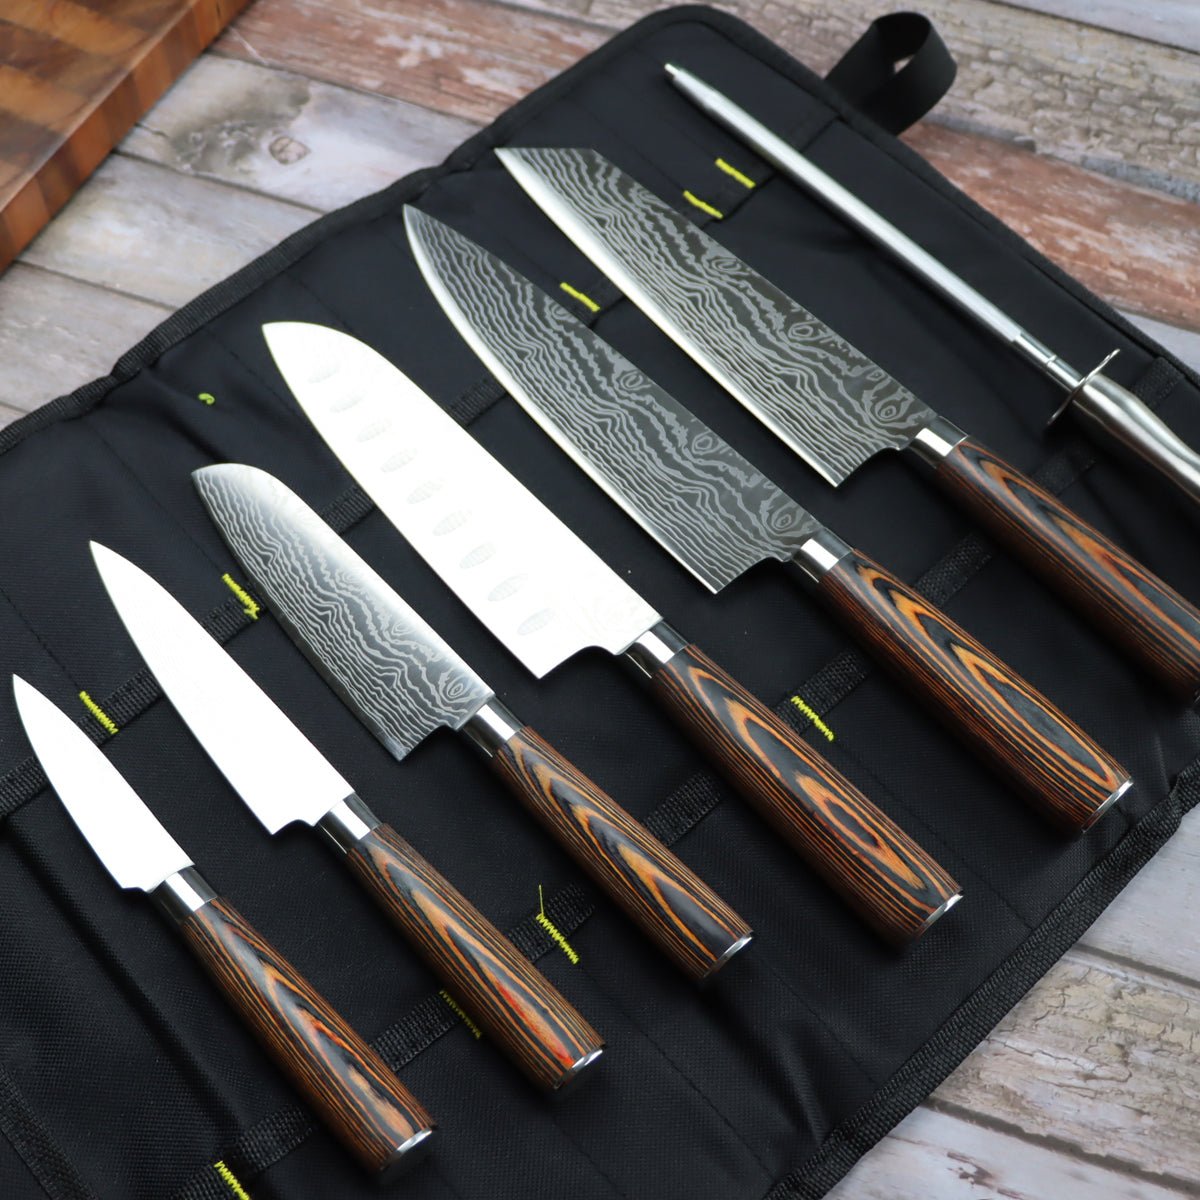 CraftKitchen™ 6 Piece Cutlery / Knife Block Set